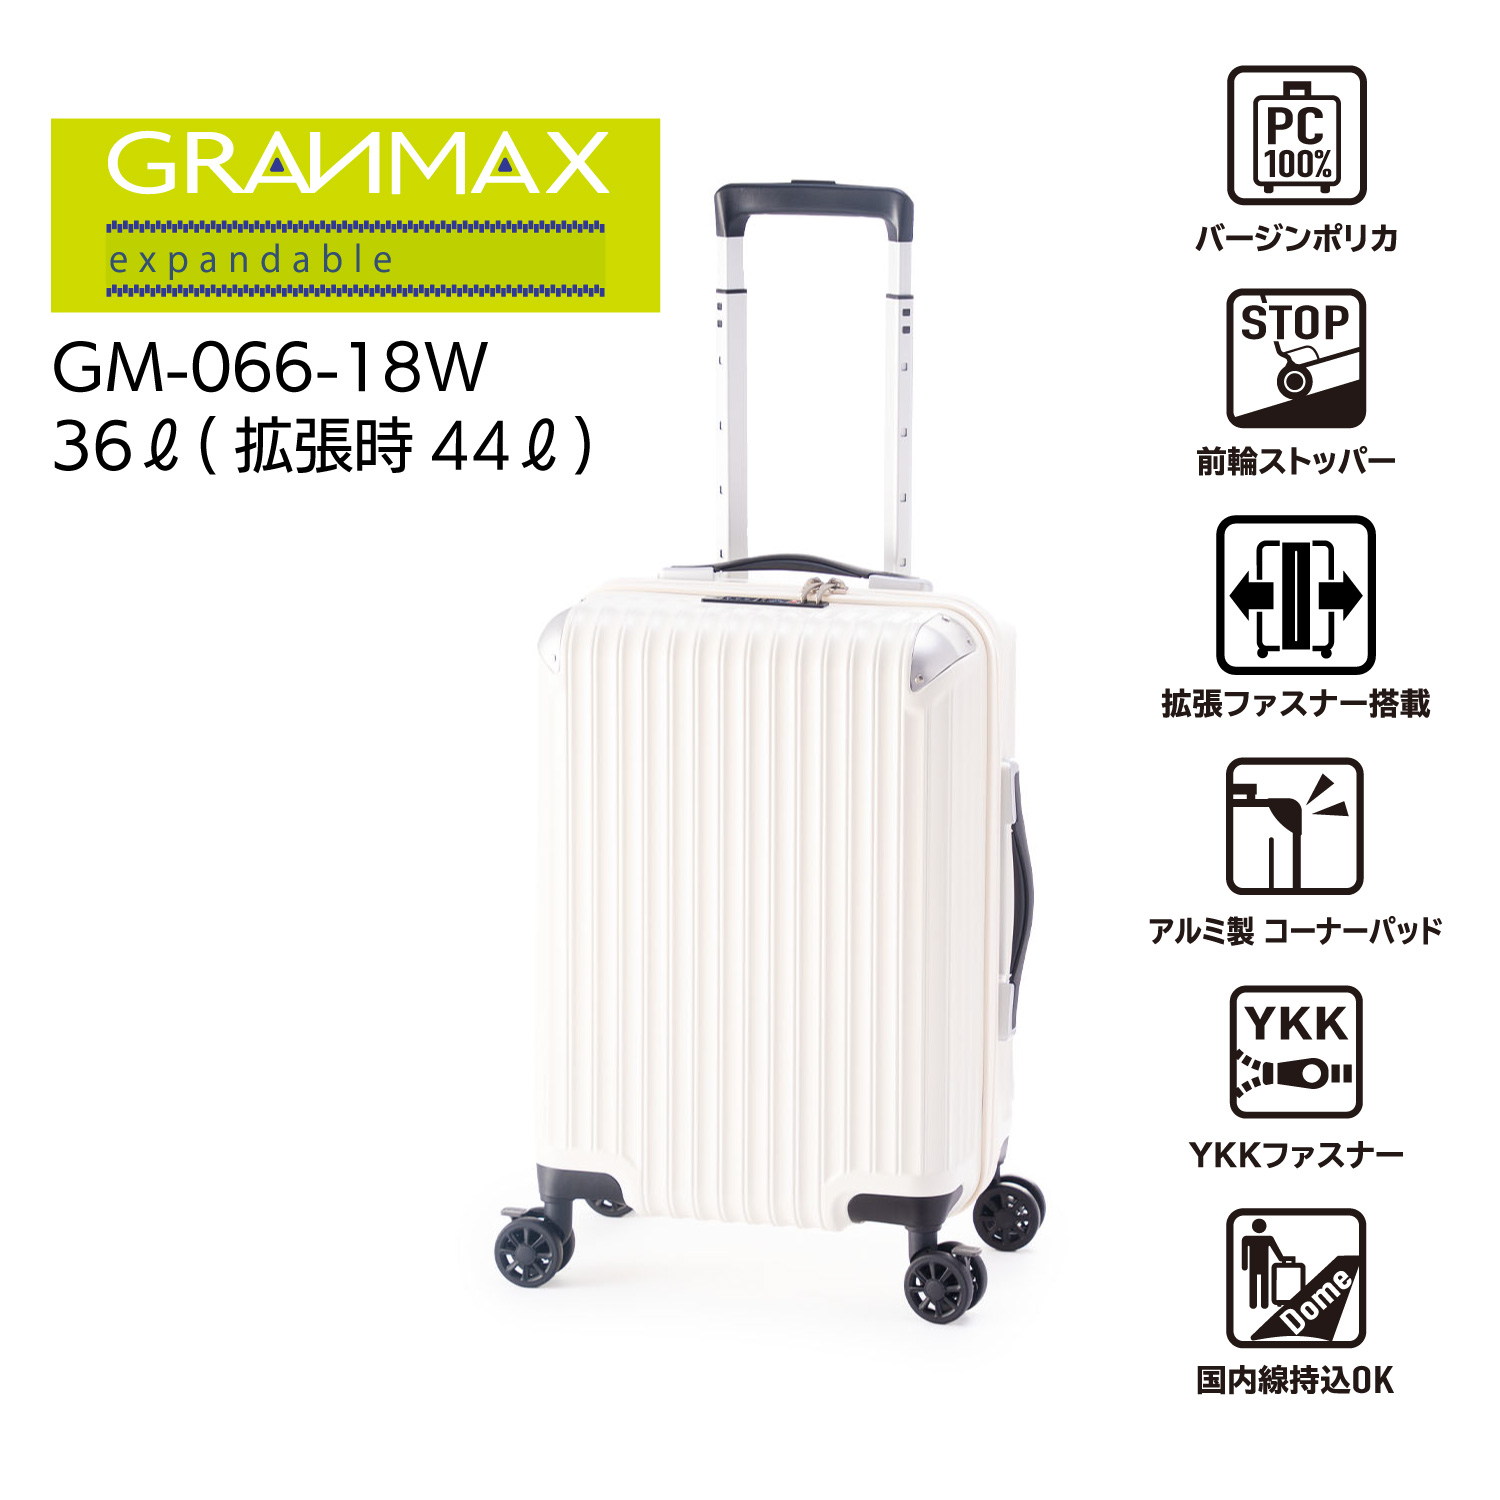 容量 | アジア・ラゲージ 公式サイト | Asia Luggage Inc.